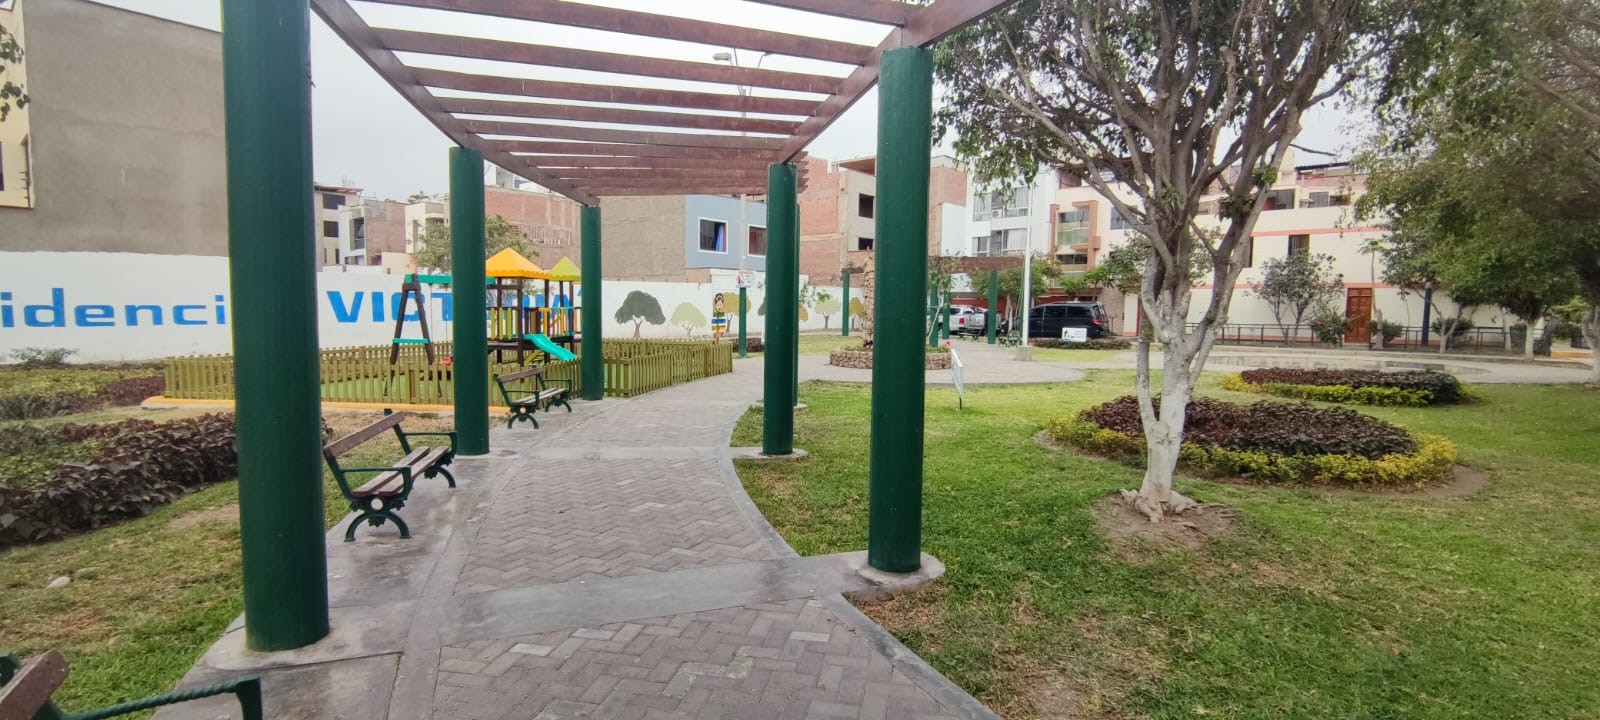 area de parque